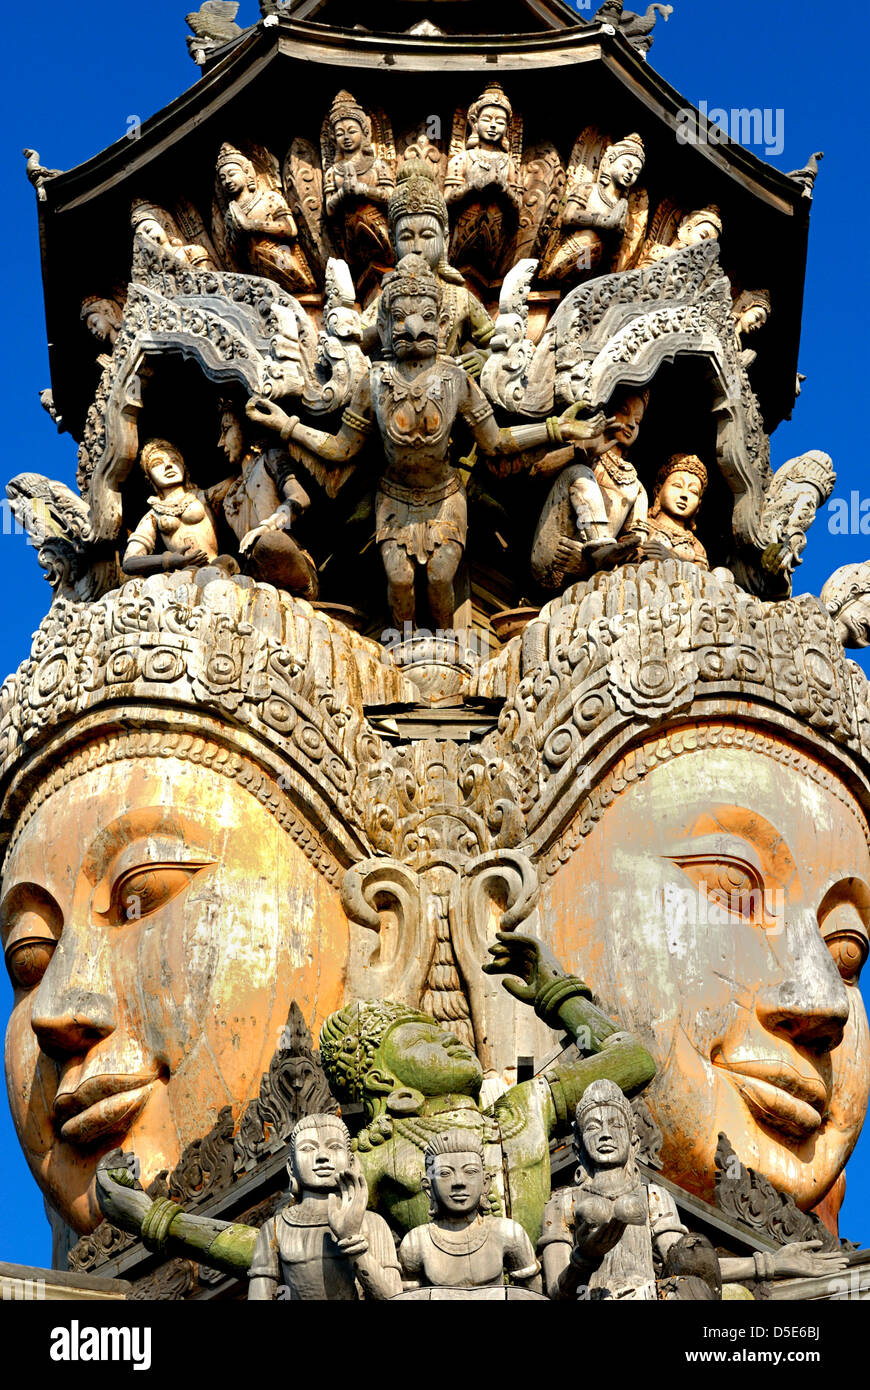 Les sculptures sur bois au sanctuaire de vérité Pattaya Thaïlande prises sur le 28/02/2013 Banque D'Images